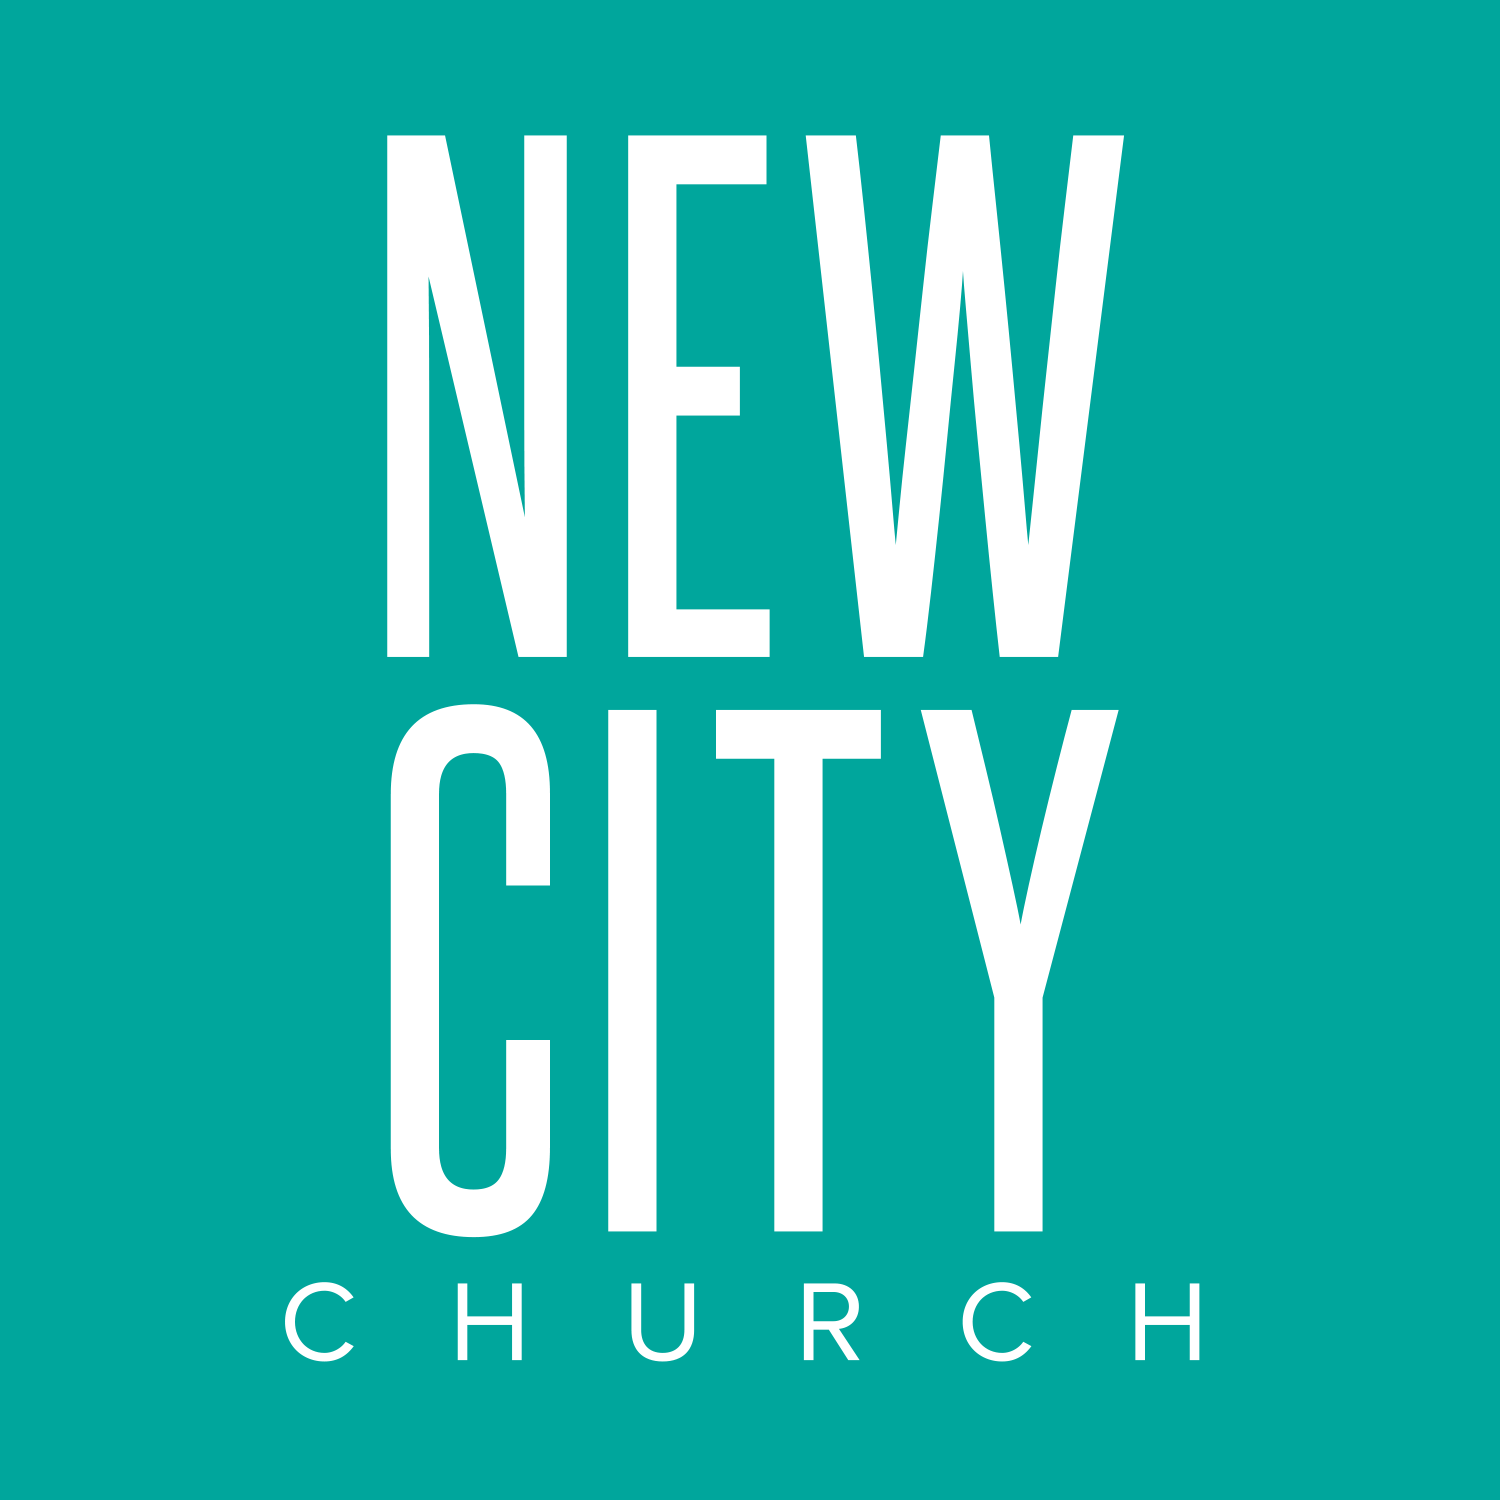 NewCity Church